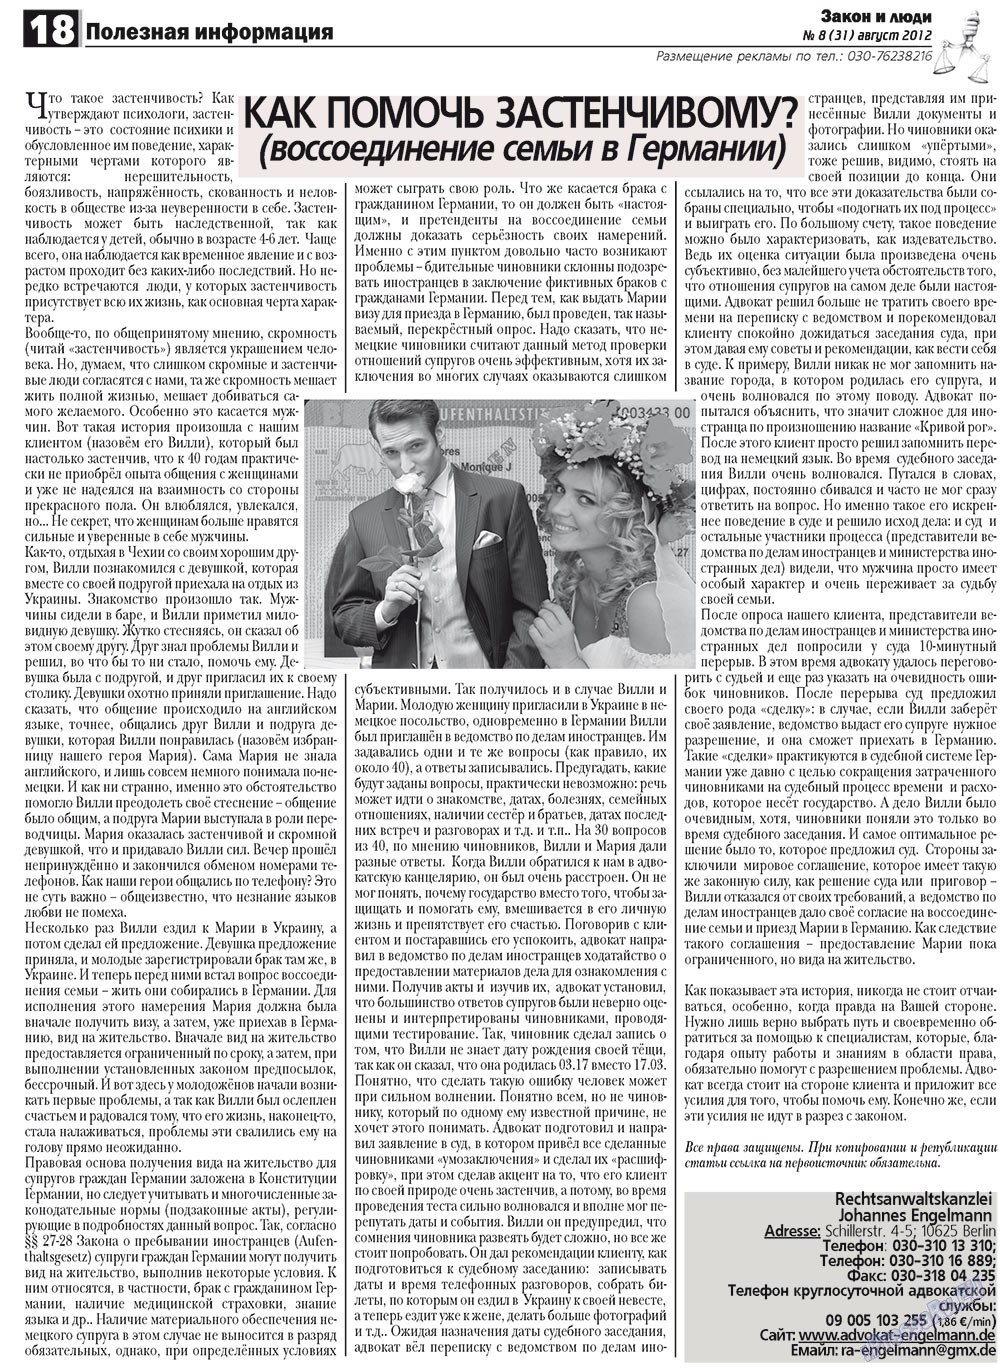 Закон и люди, газета. 2012 №8 стр.18